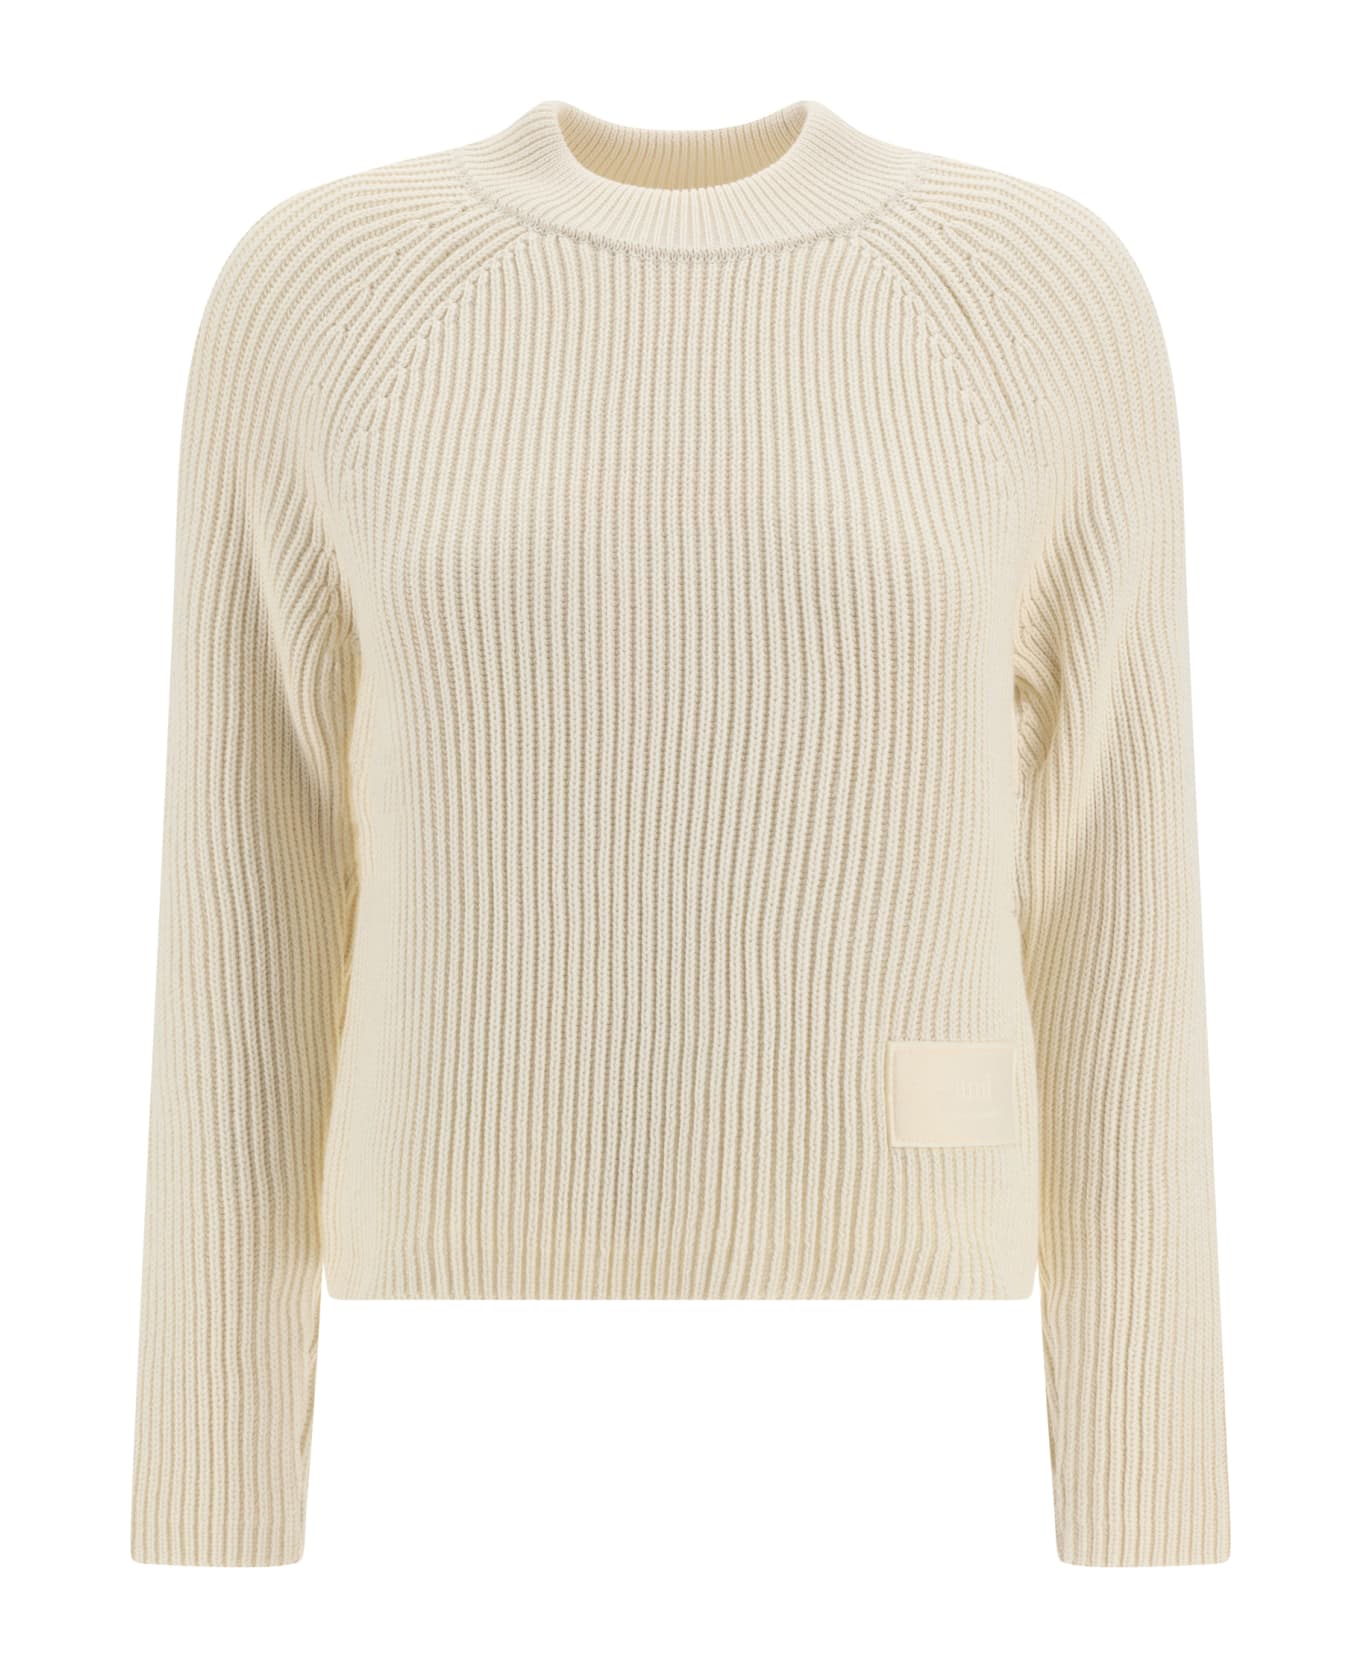 Ami Alexandre Mattiussi Label Sweater - Cream